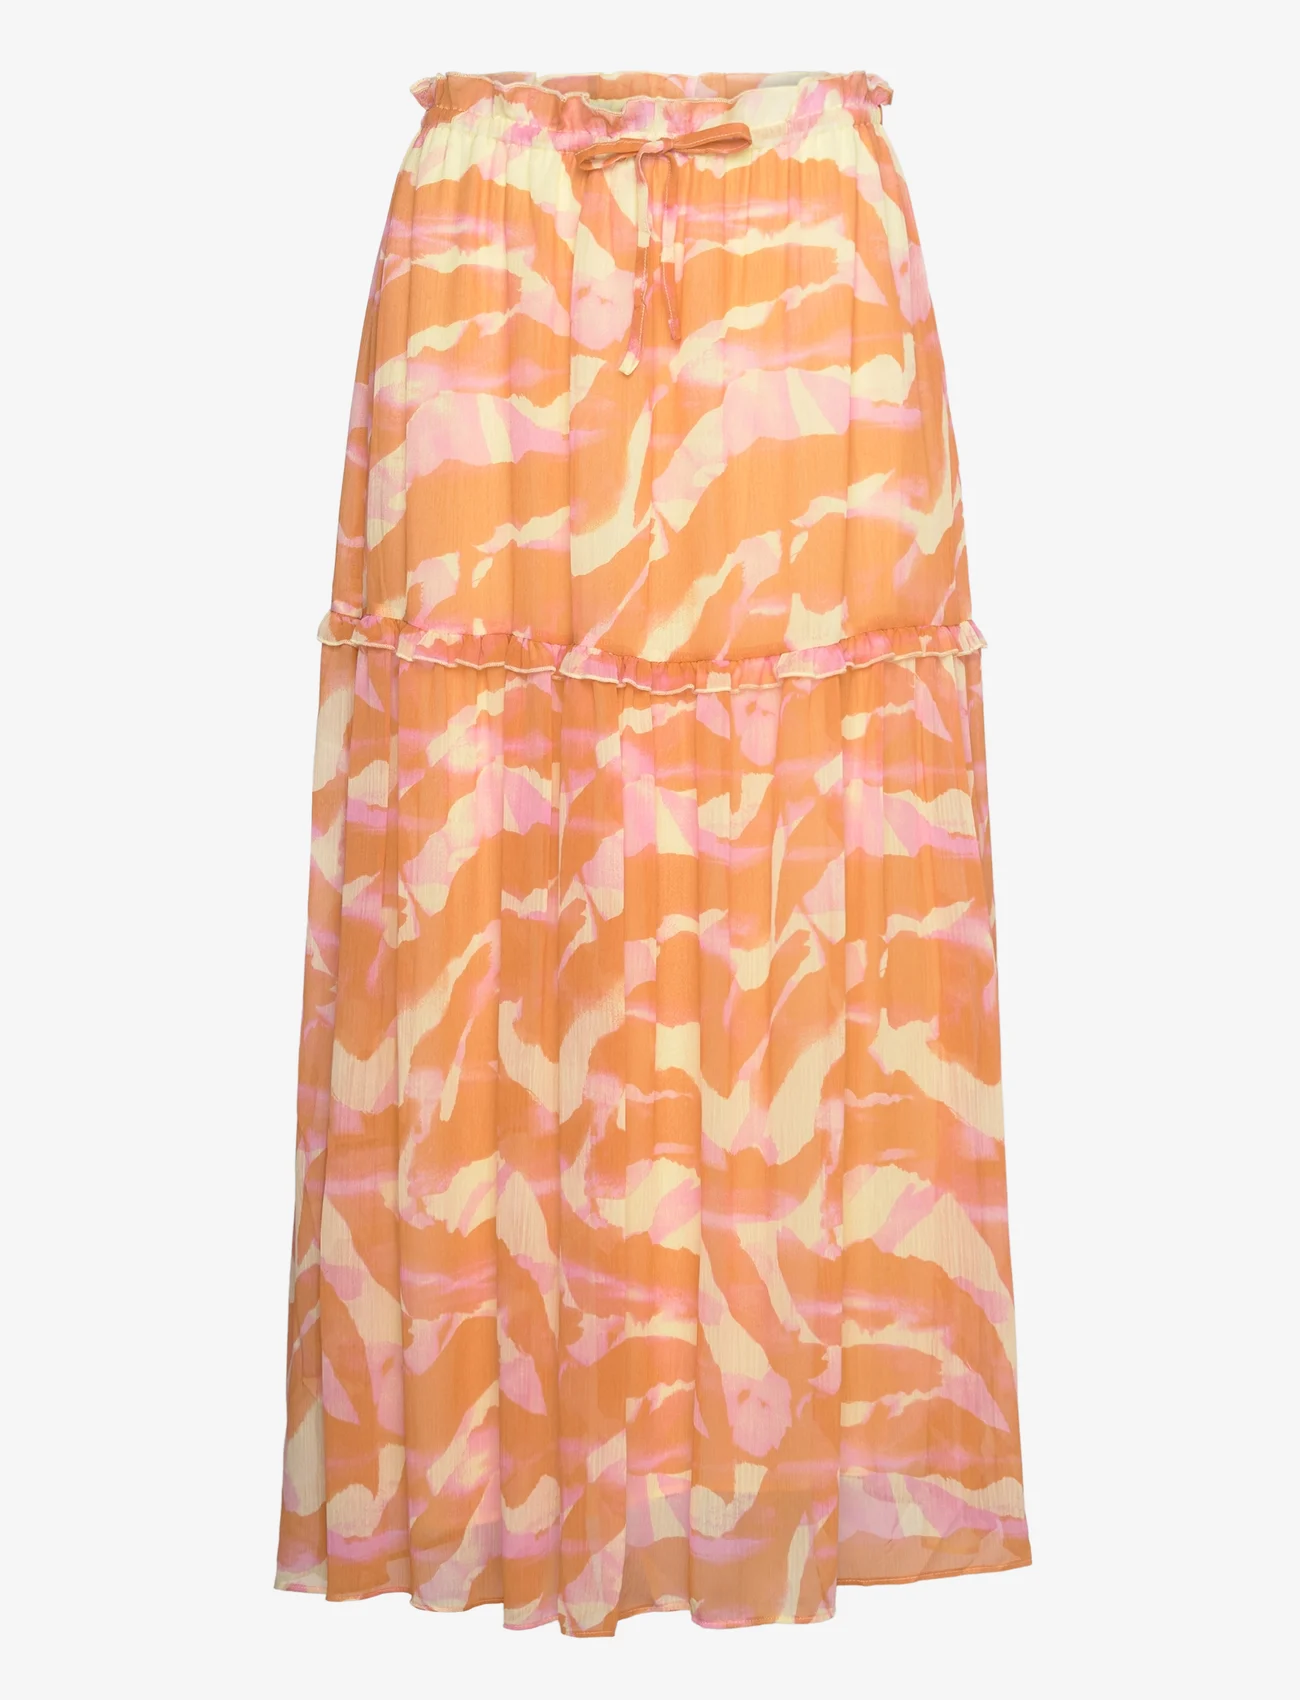 Rosemunde - Recycled chiffon skirt - lange rokken - orange abstract art print - 0